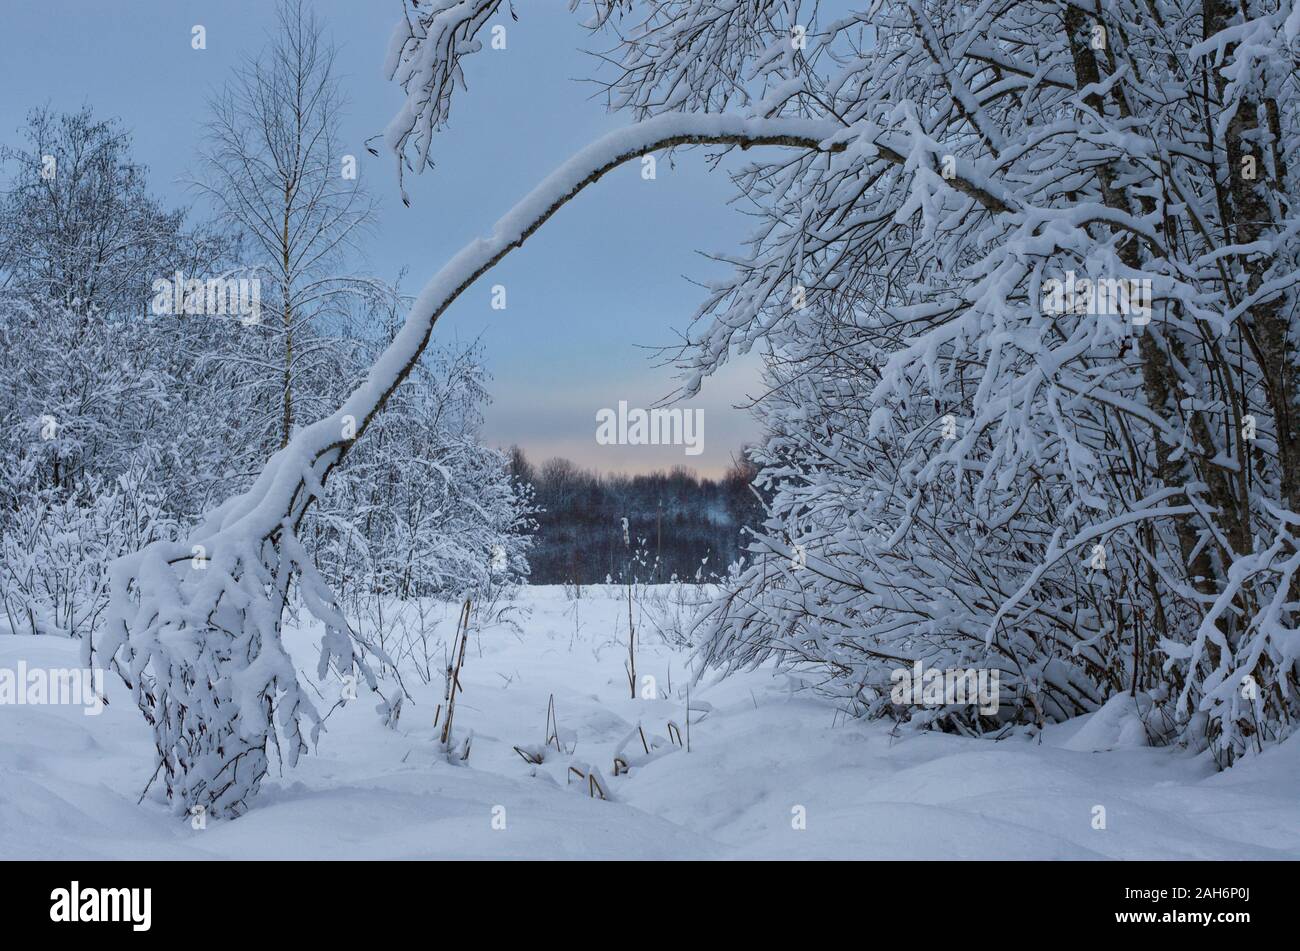 Sera paesaggio invernale con una struttura ricurva e cespugli coperti di neve in inverno forest Foto Stock